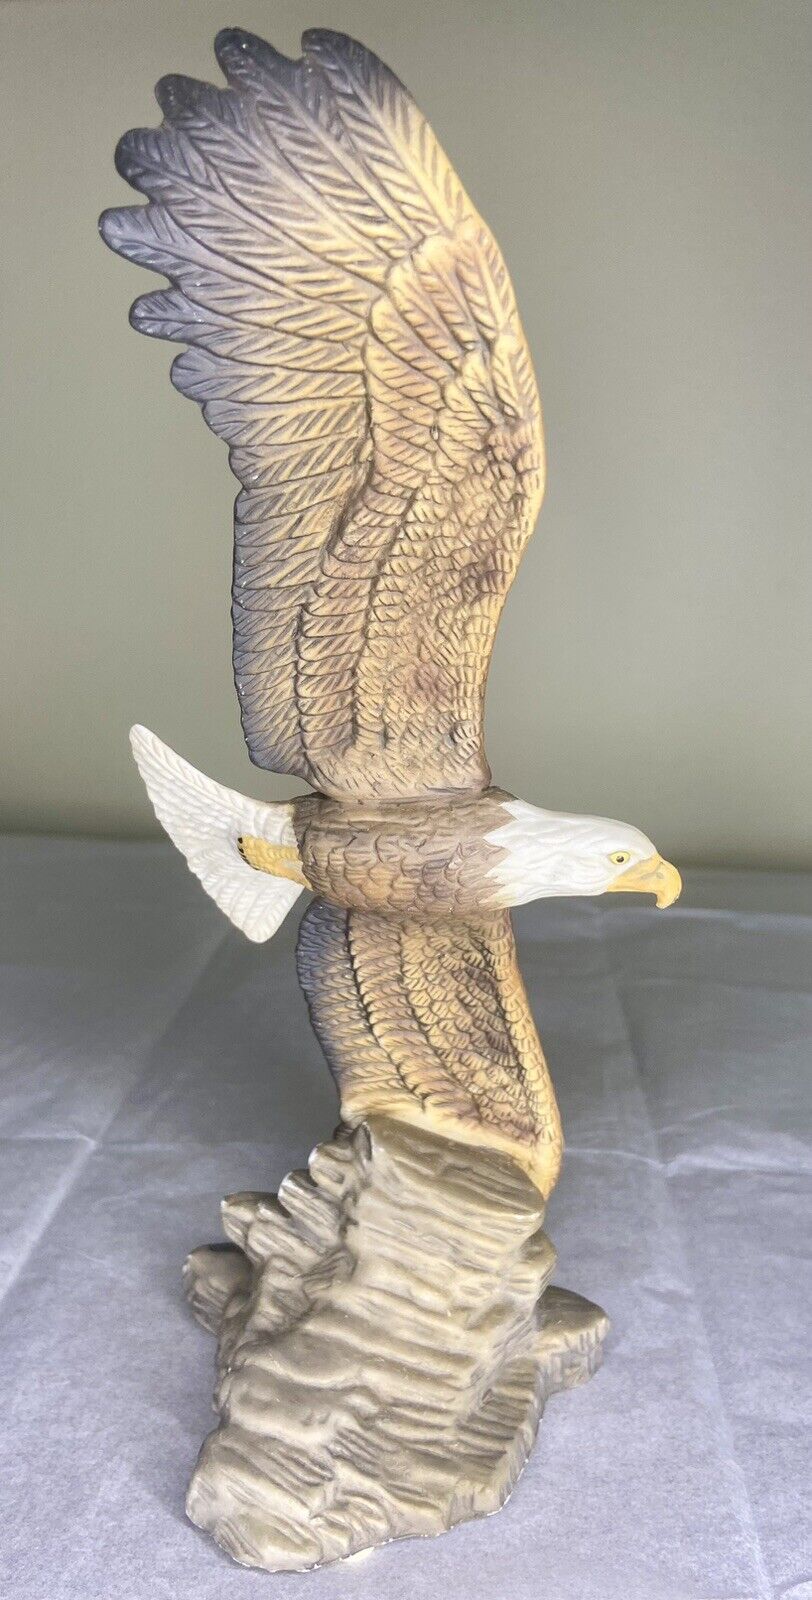 Soaring Eagle Figurine - Bald Eagle In Flight 9” Tall